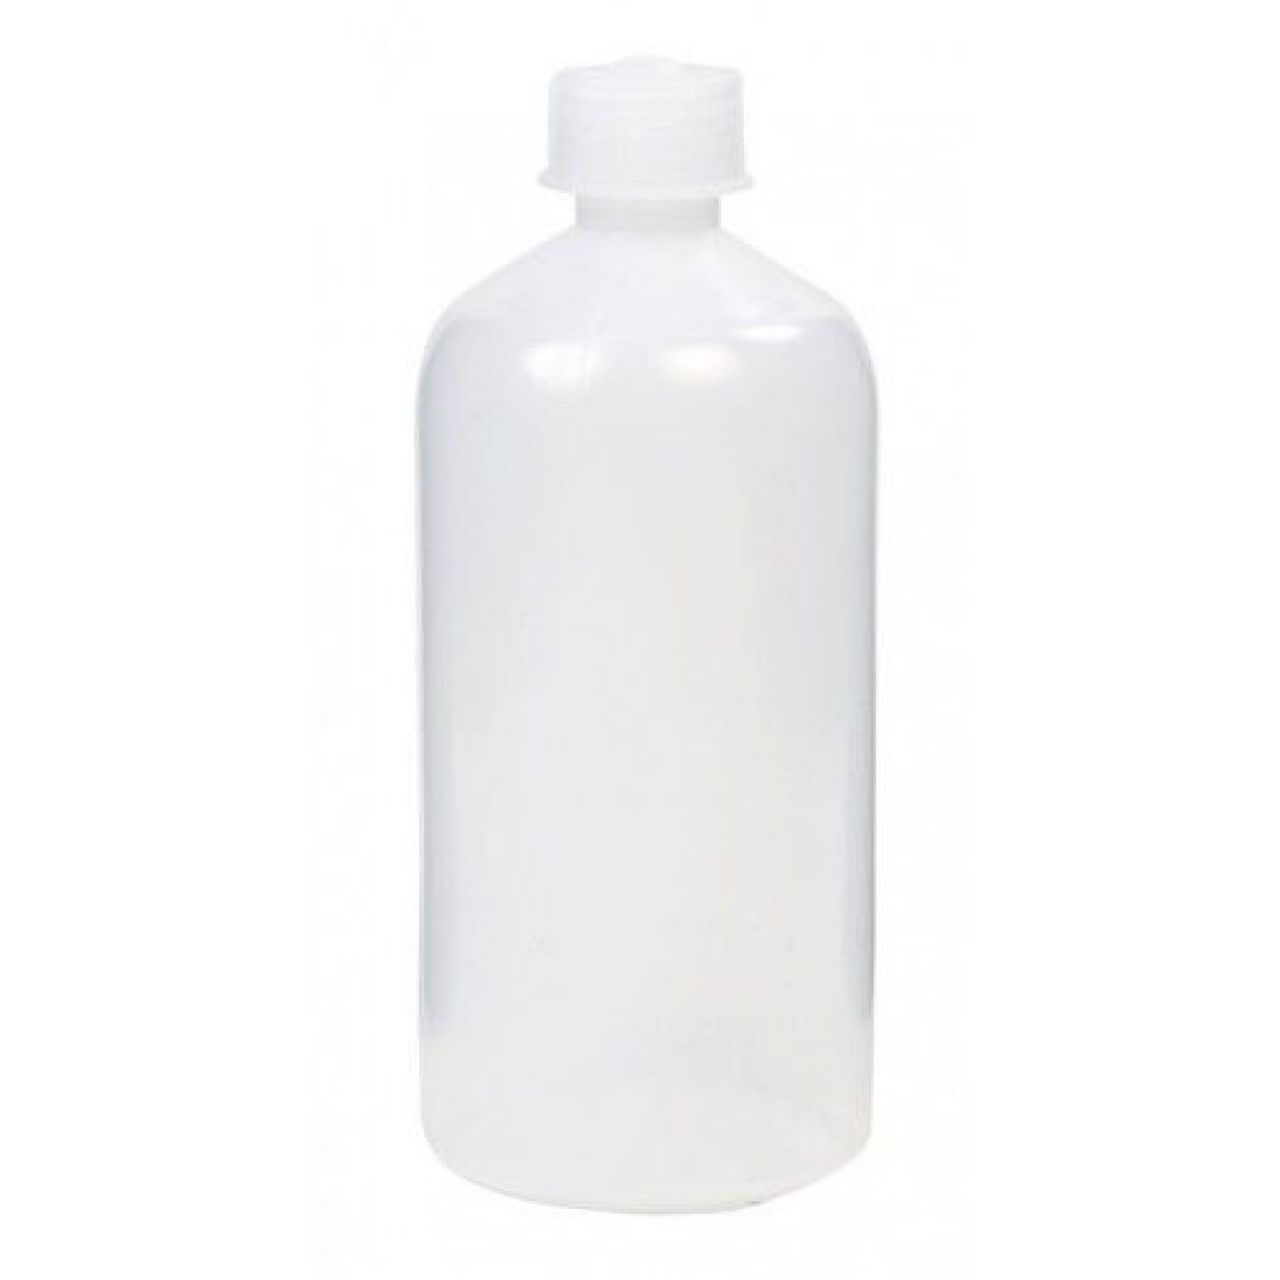 Botella transparente sin pico 1 litro